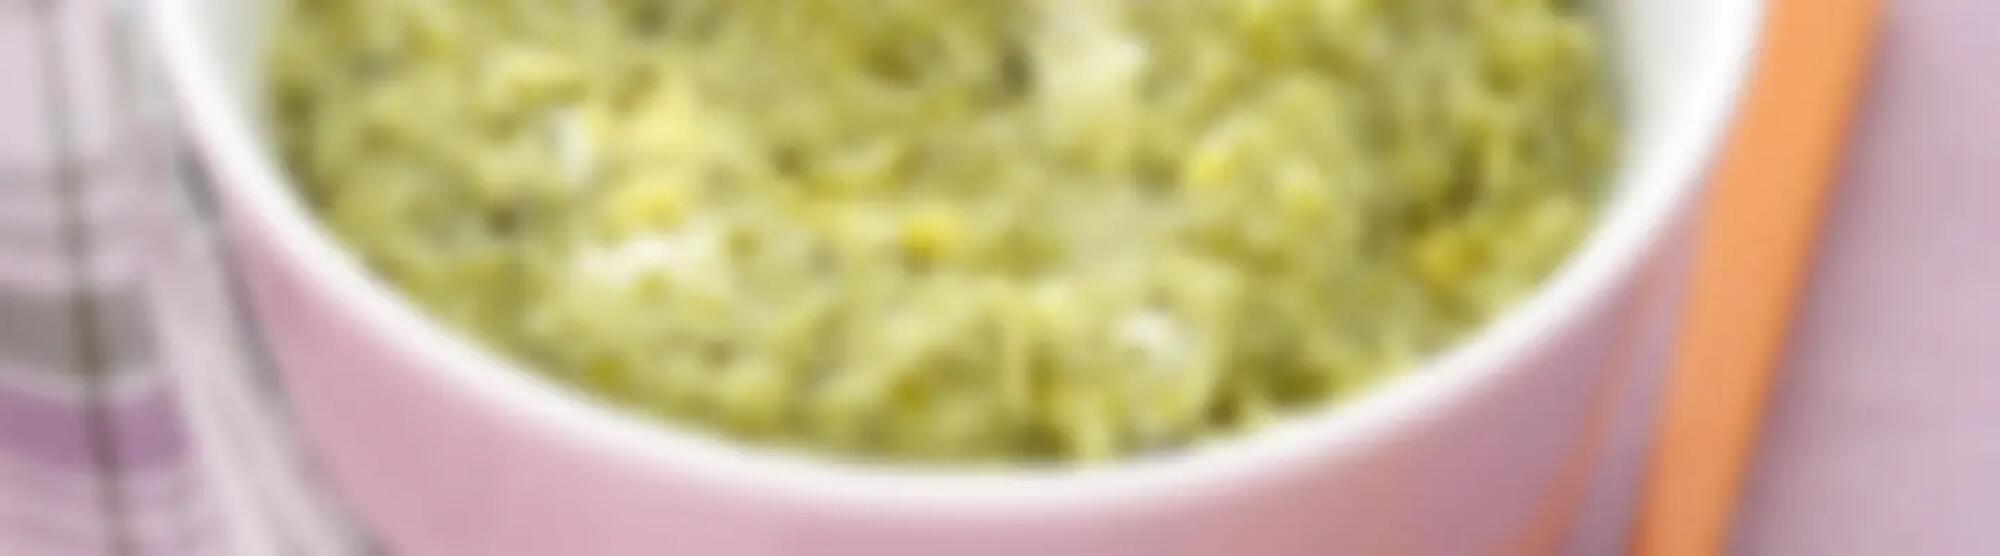 Recette : Purée de brocolis, jaune d'oeuf et fromage frais